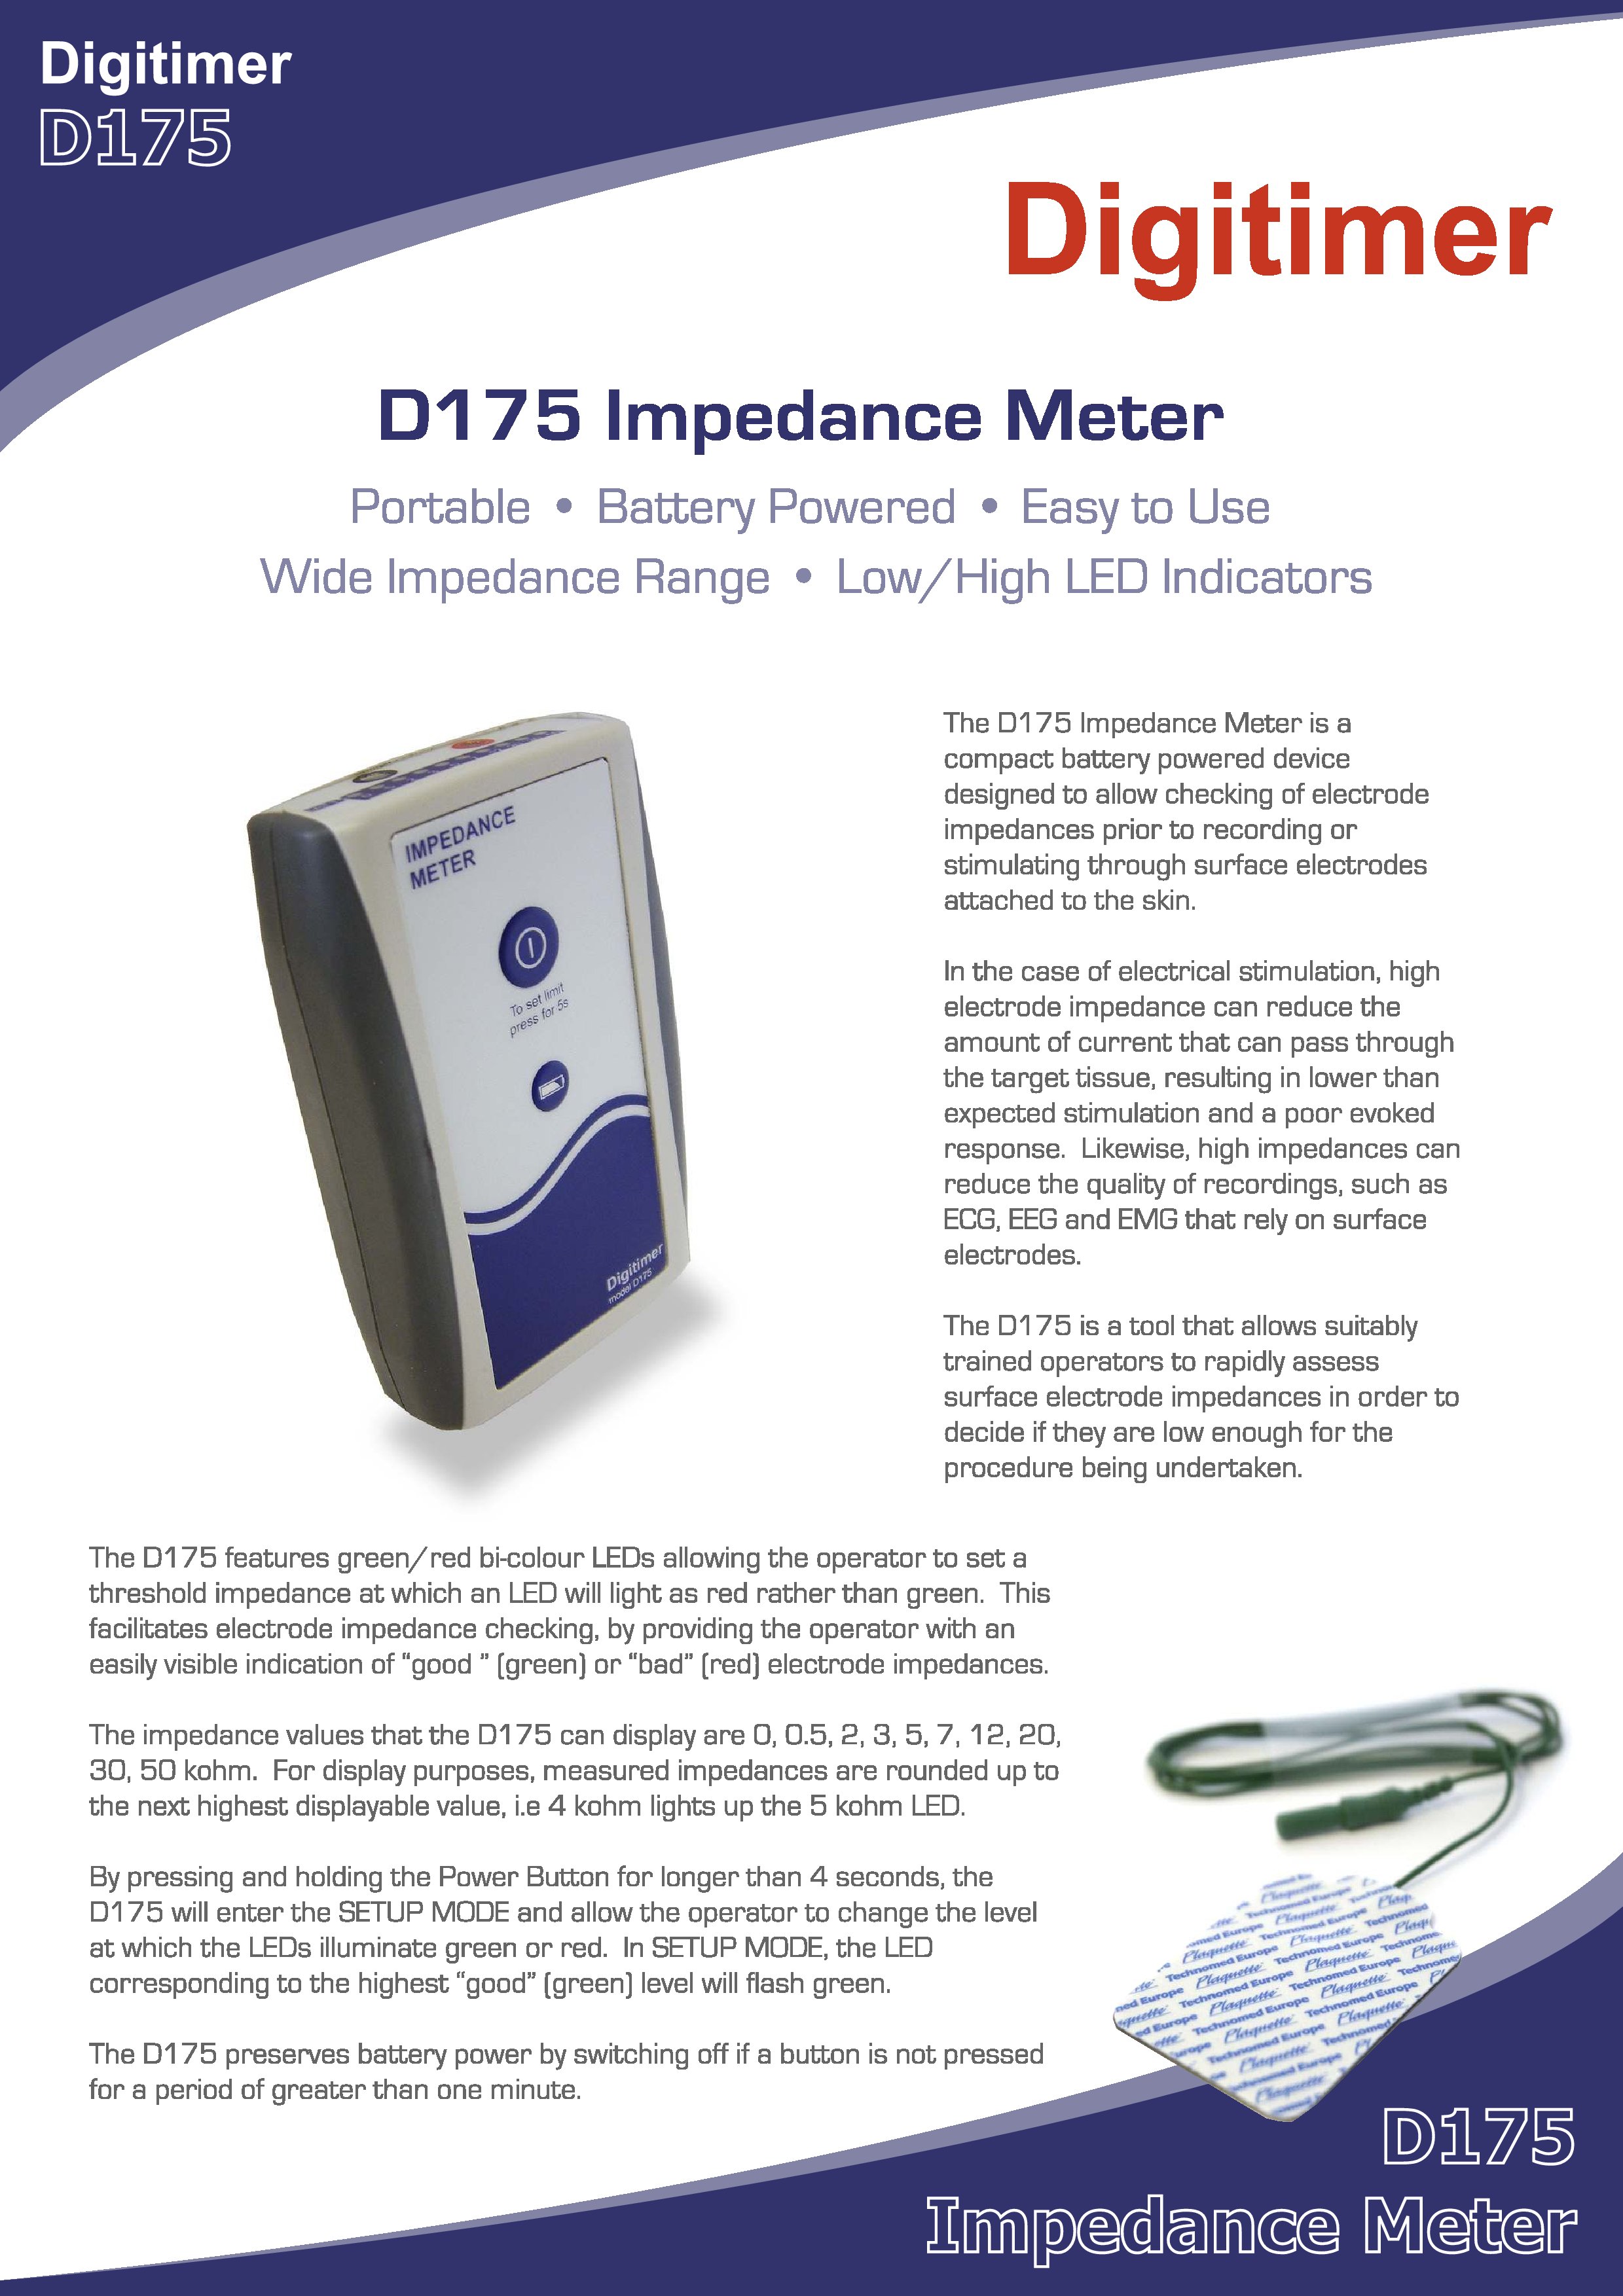 Digitimer D175 Impedence Meter